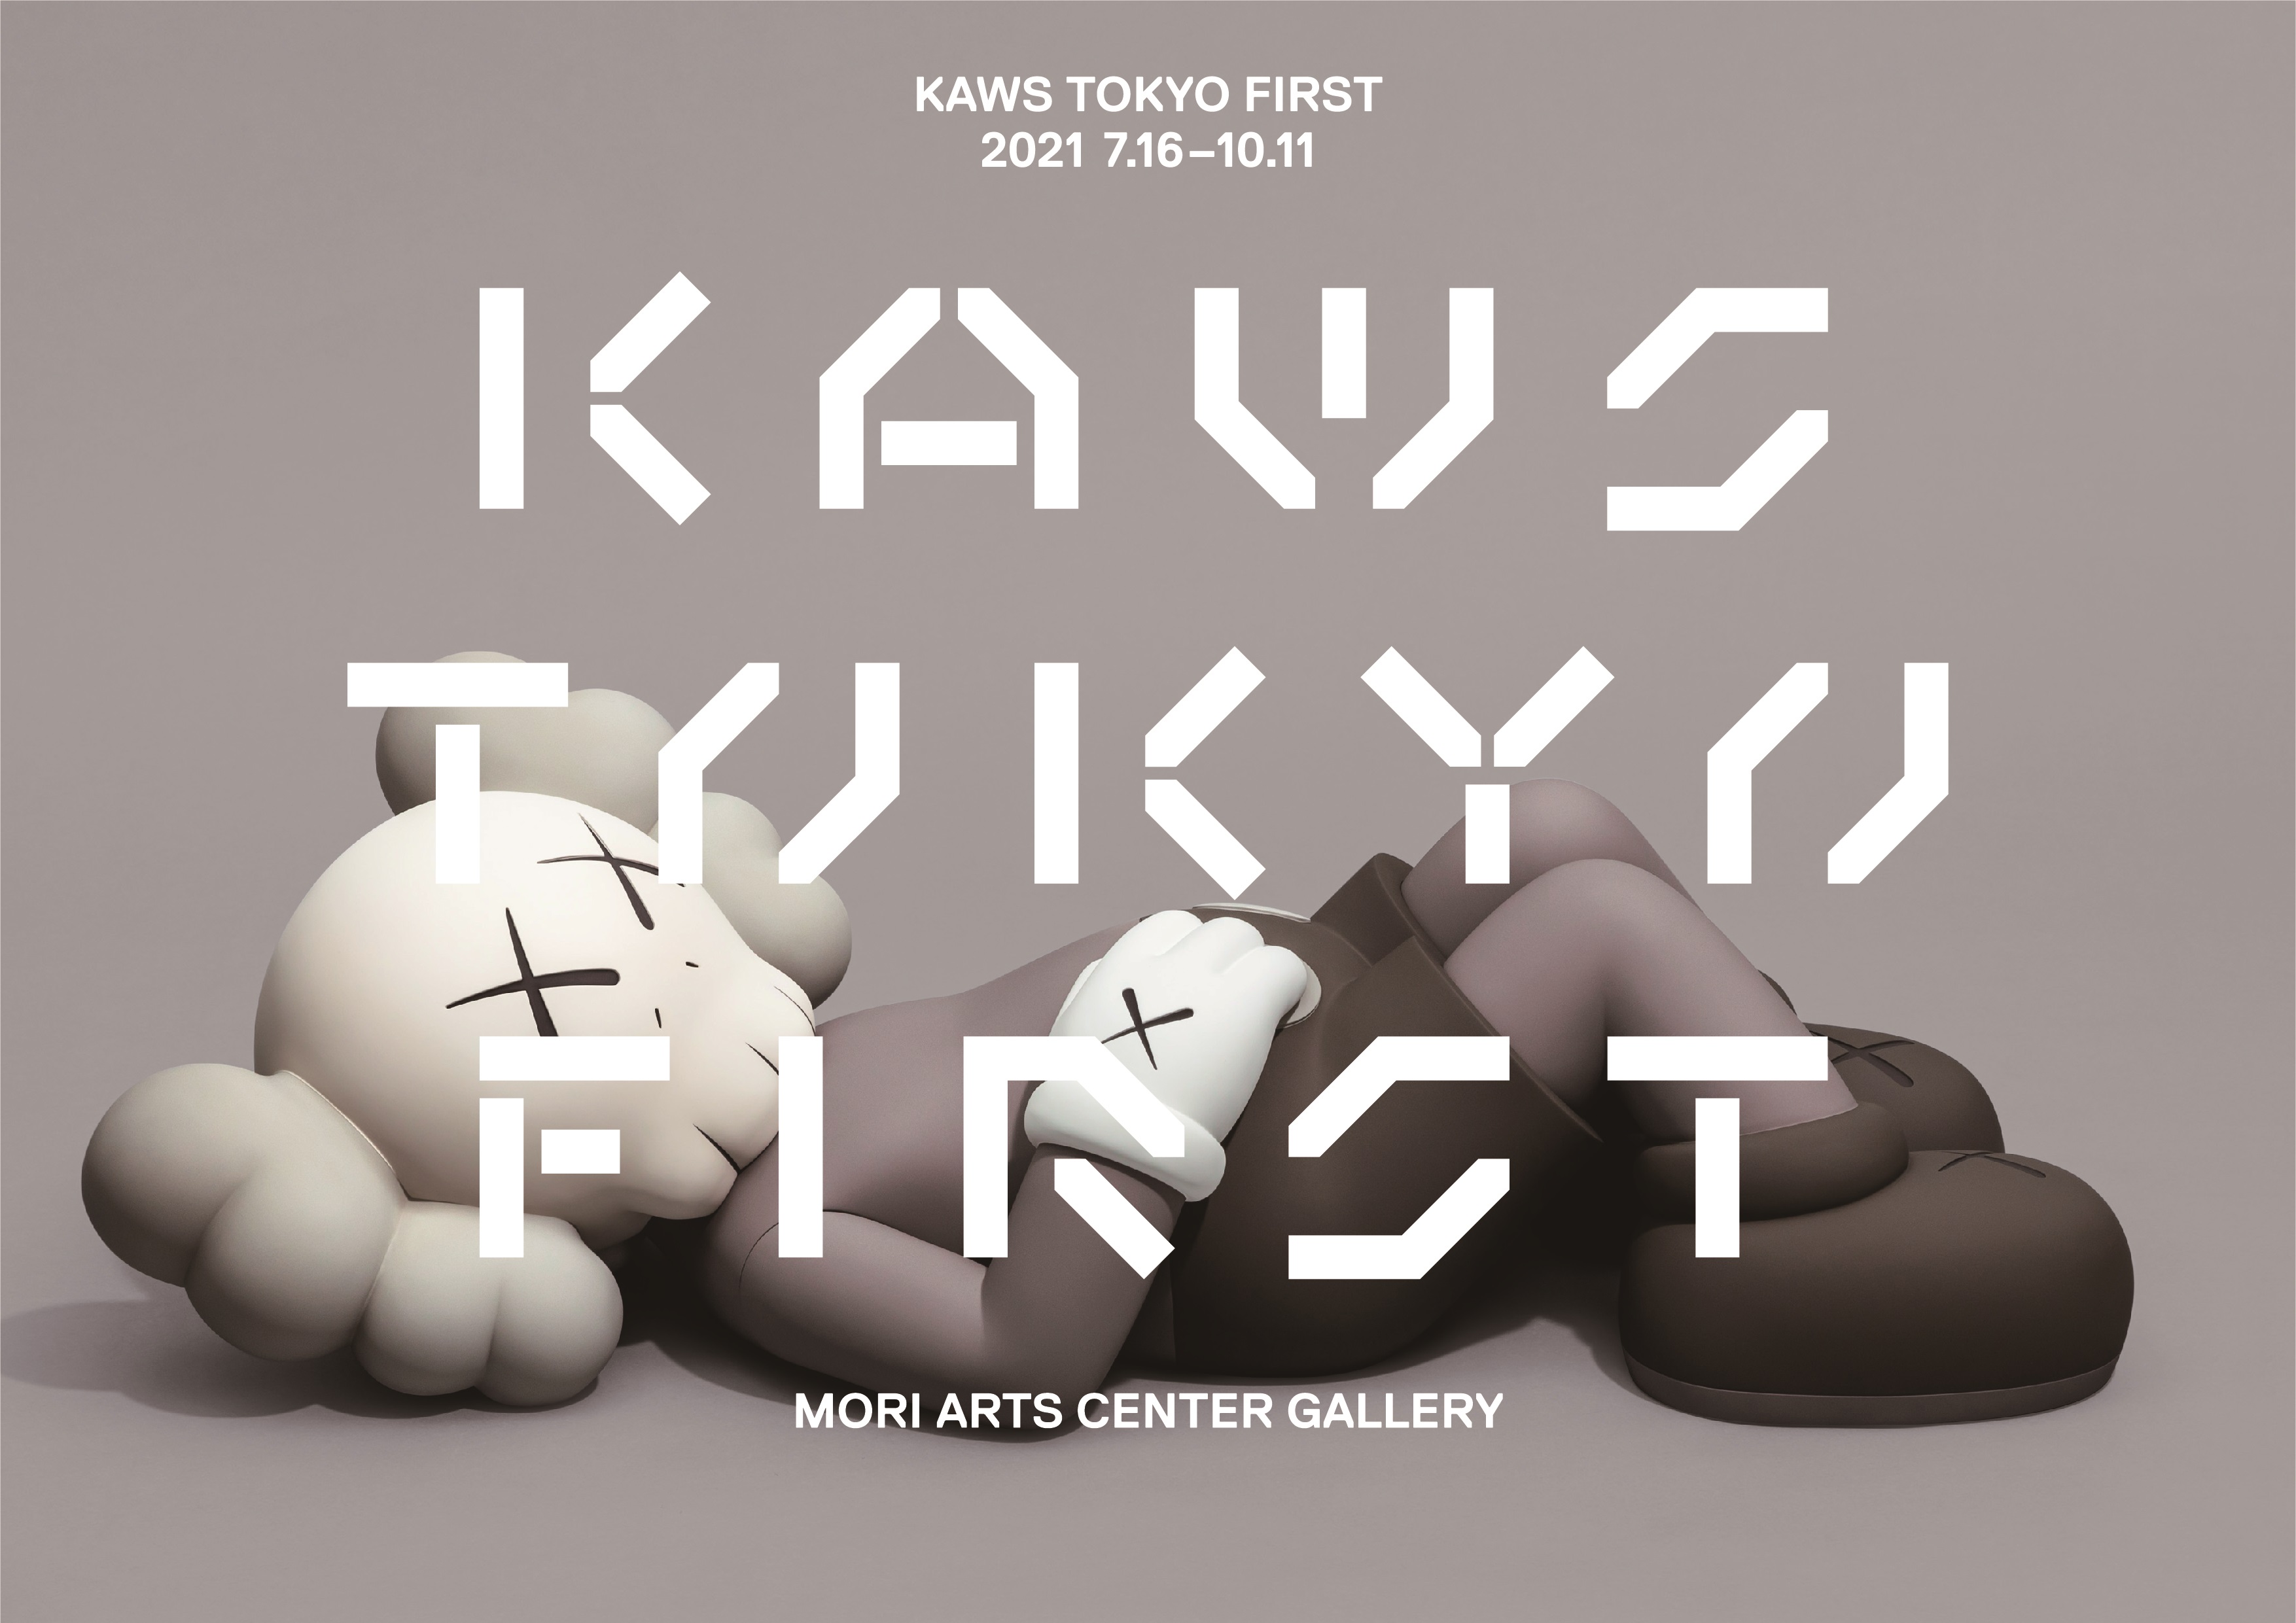 KAWS国内初大型展覧会のための特別なコラボレーション 「KAWS UT